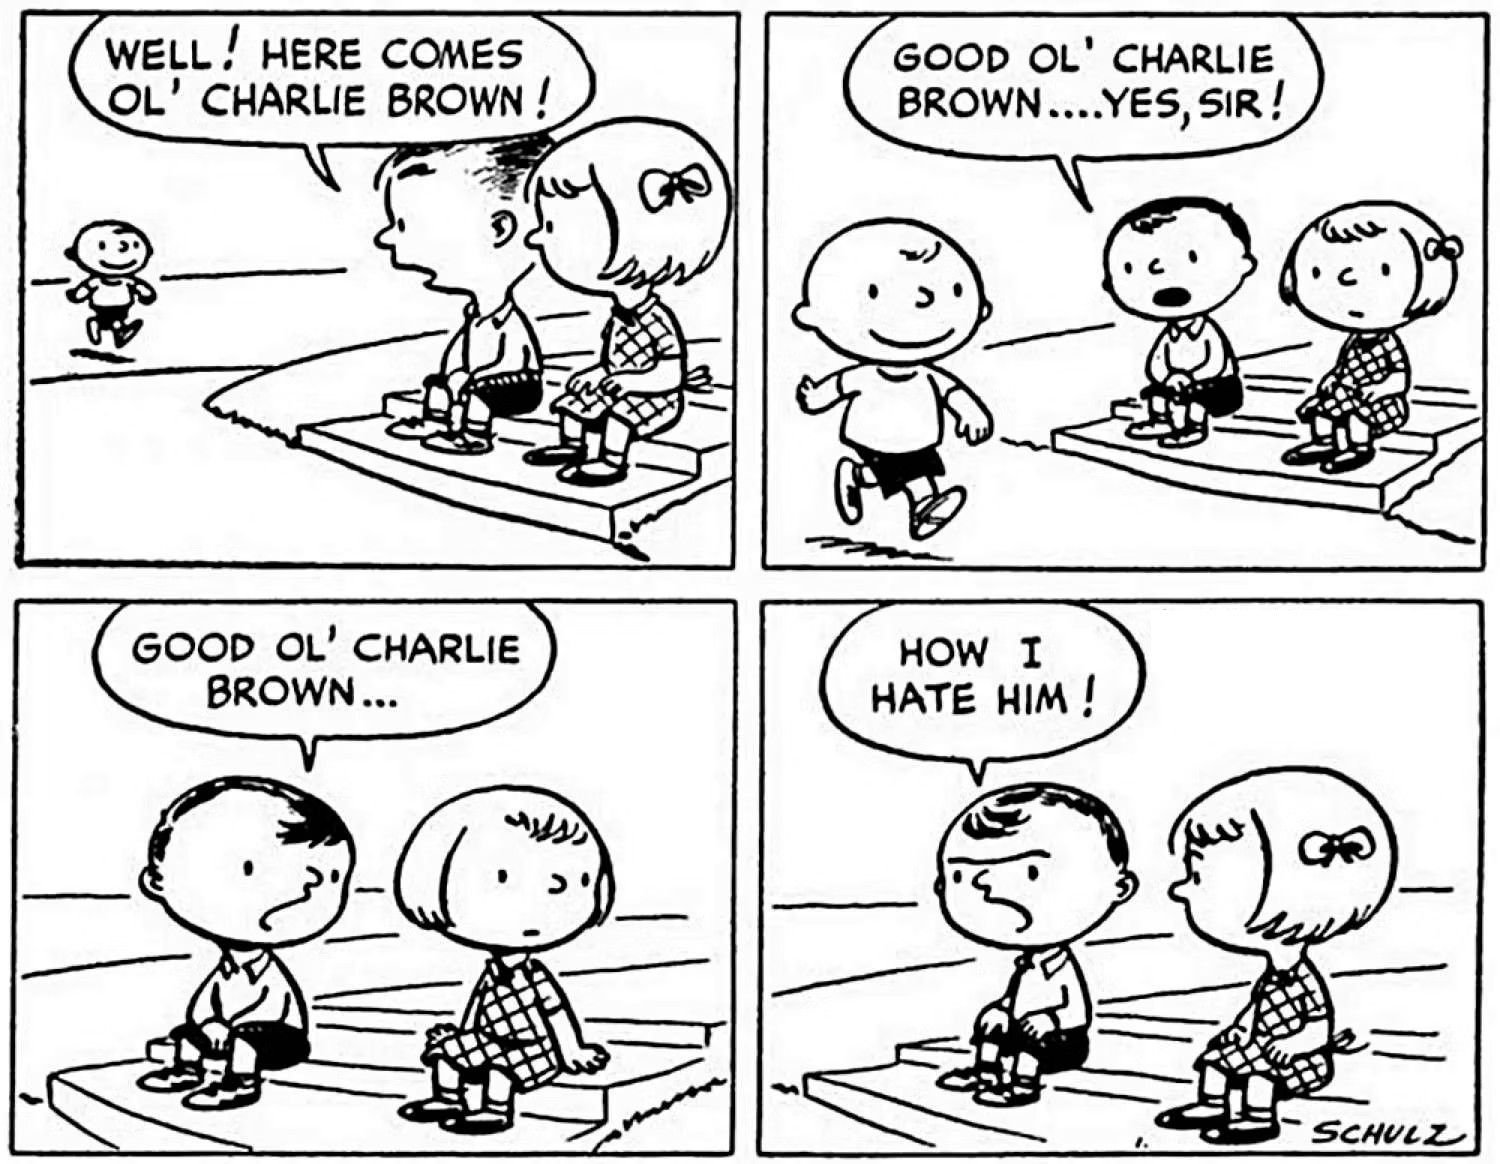 primeira história em quadrinhos de amendoim de todos os tempos, estreia de Charlie Brown